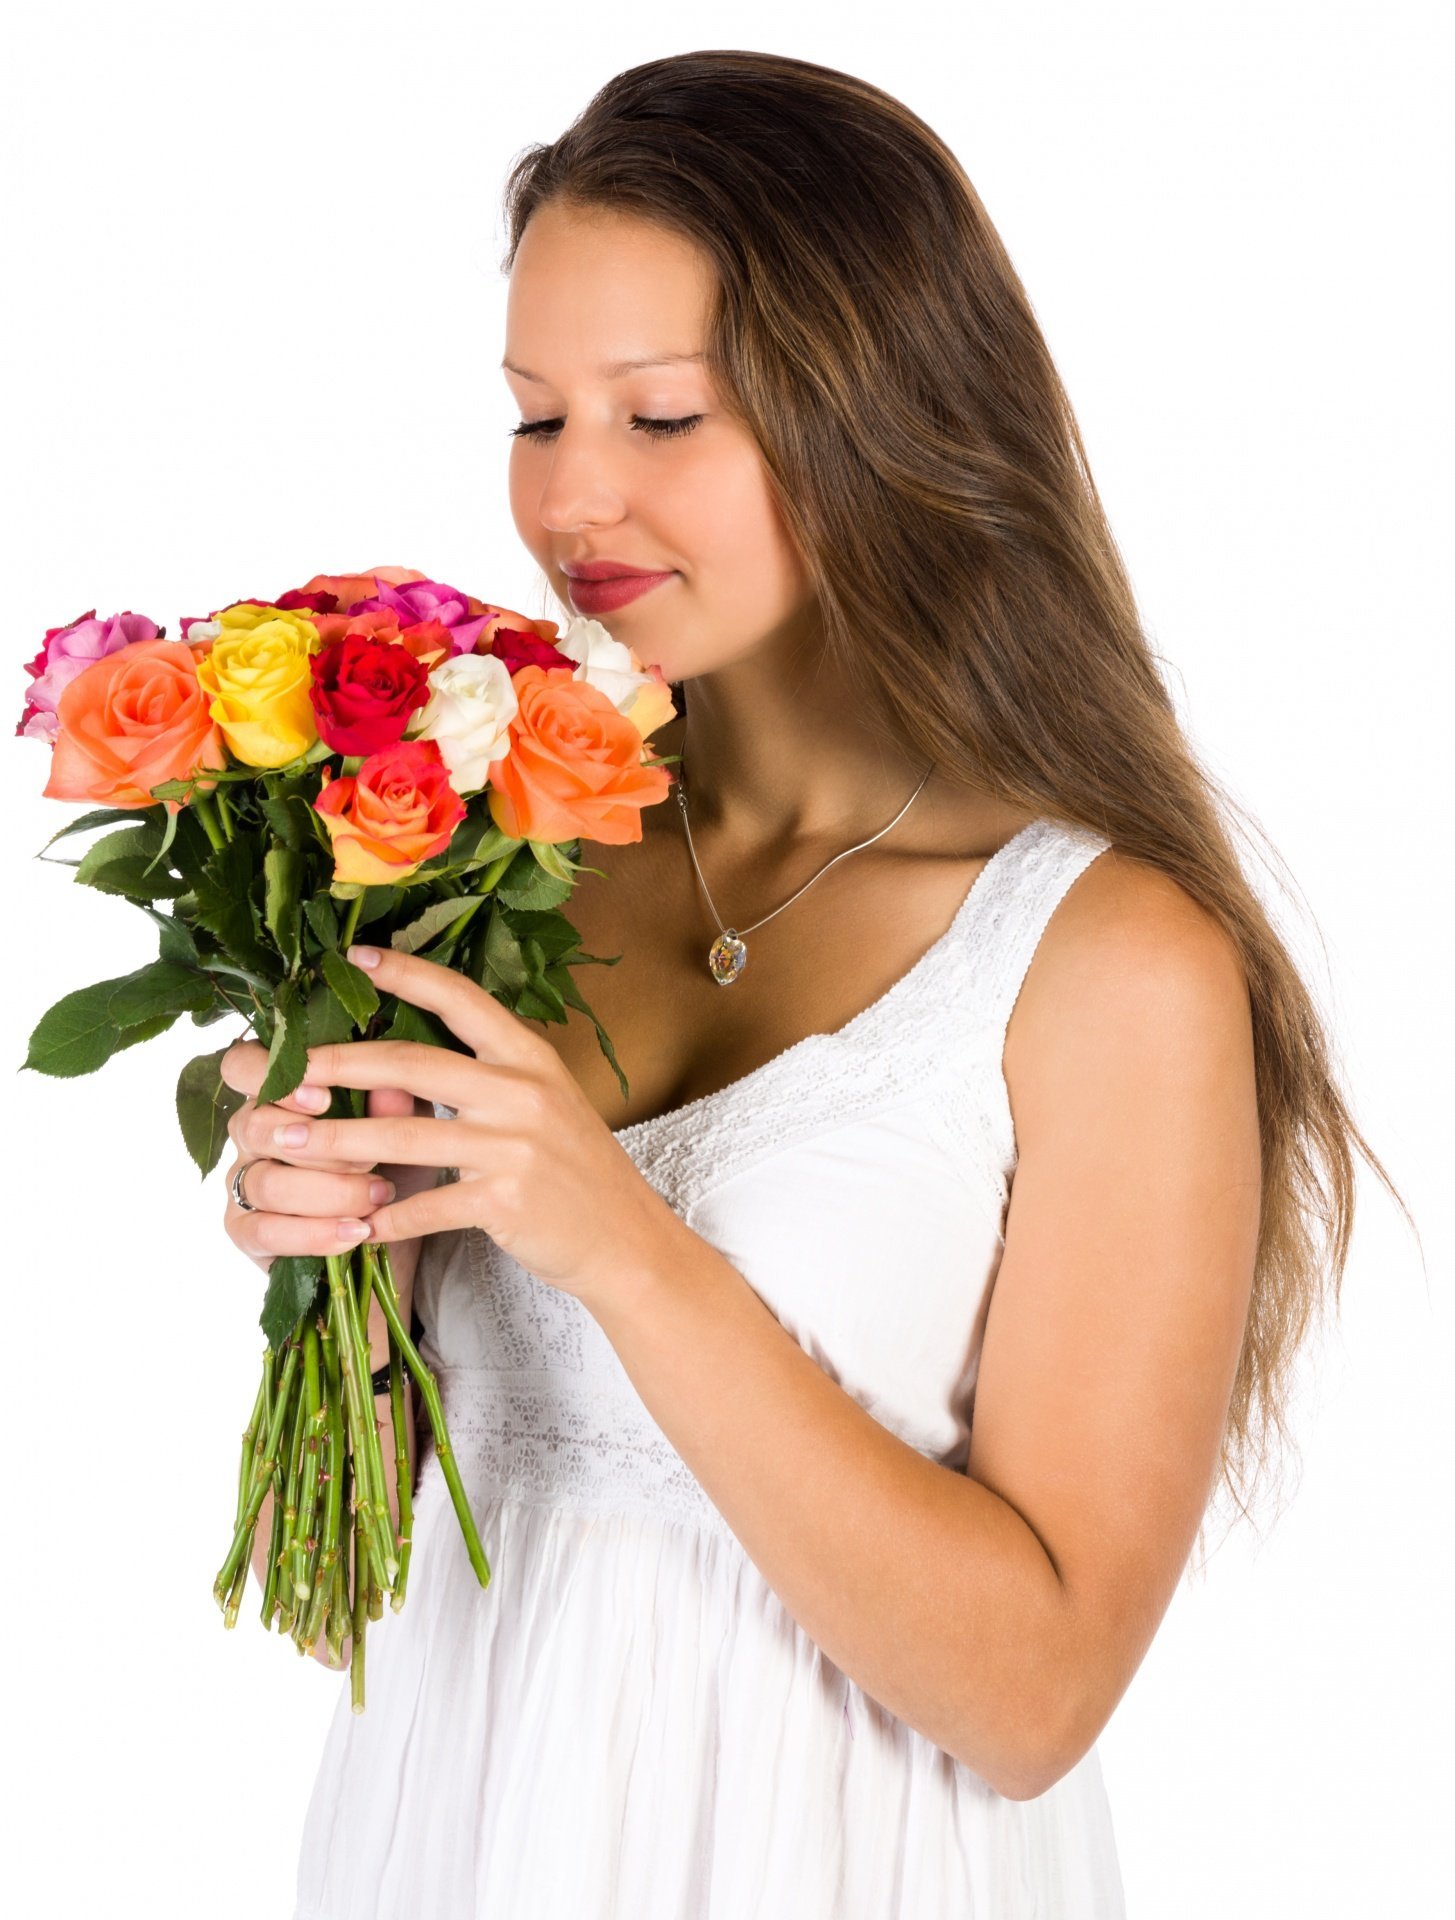 45 дарят цветы. Букет "девушке". Букет цветов для женщины. Девушка с цветами. Букет в руках у женщины.